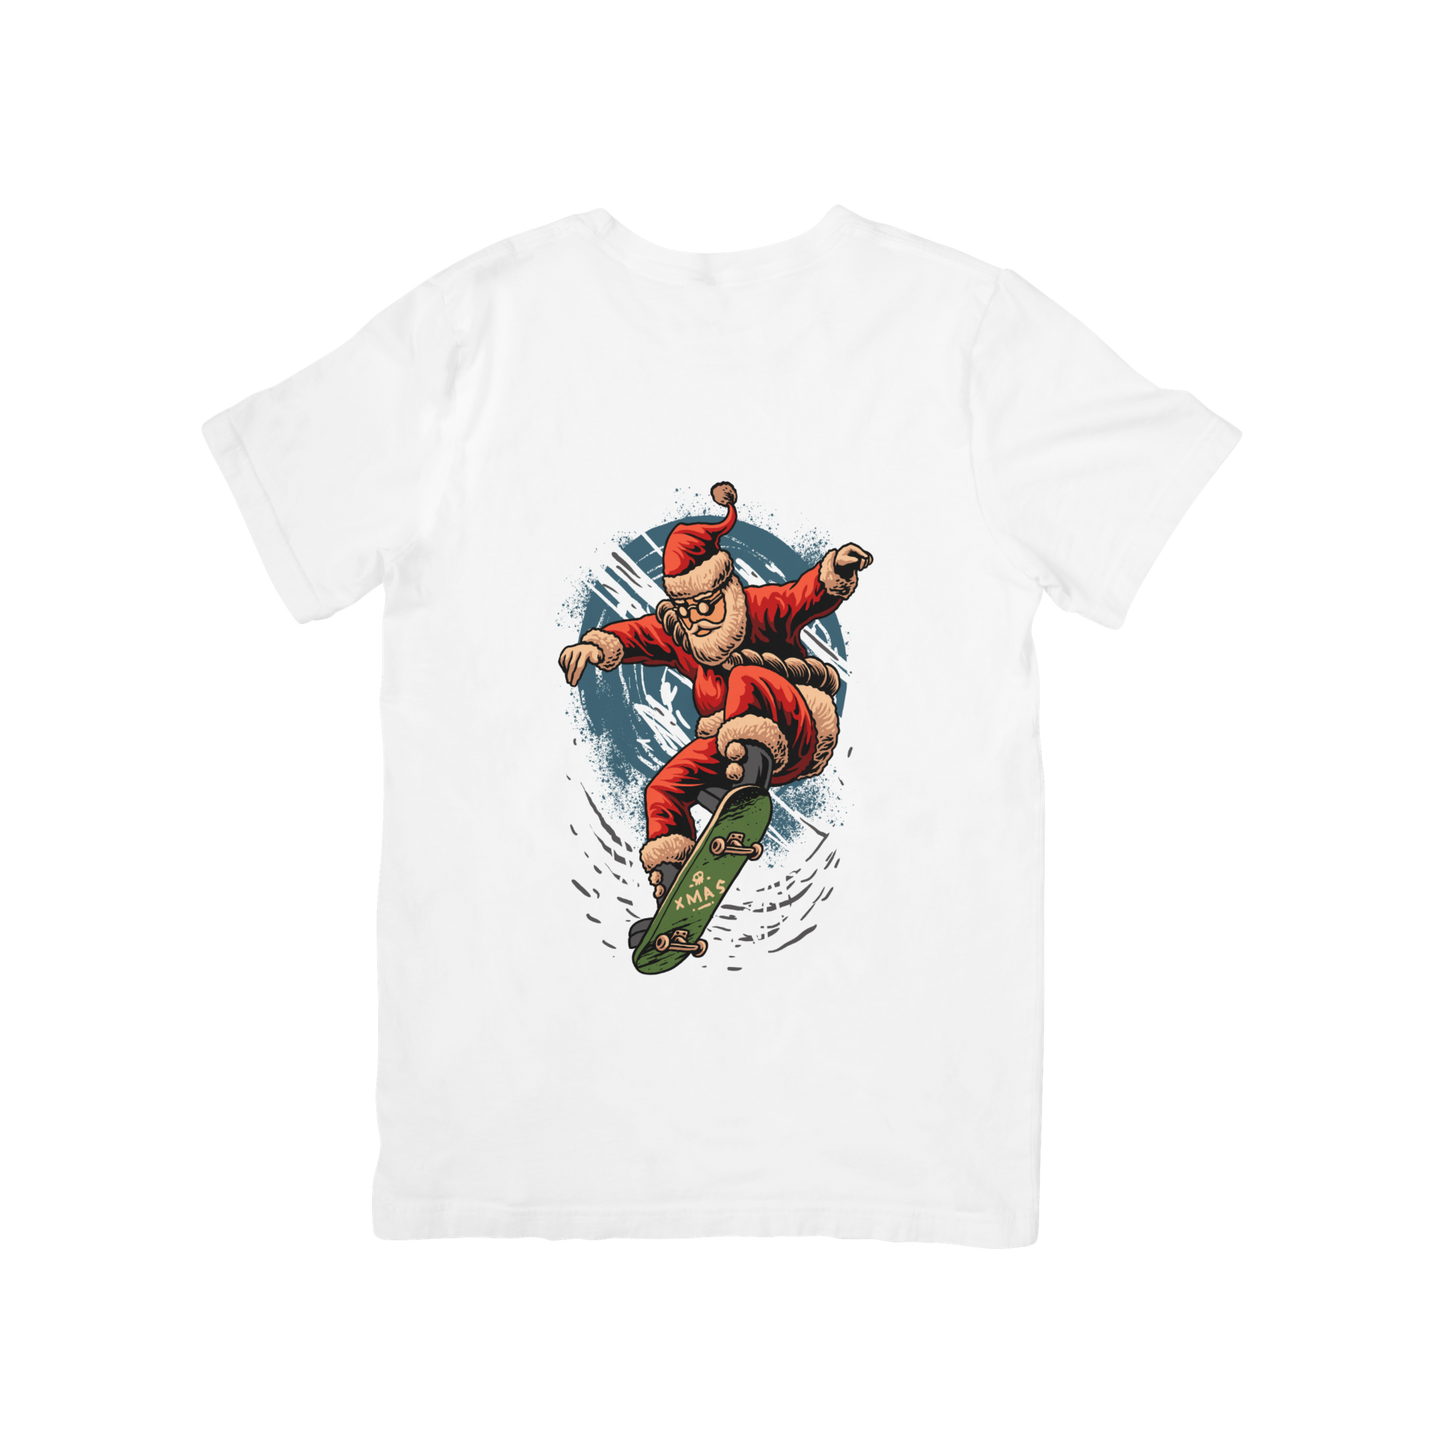 Santa Claus Design T-shirt